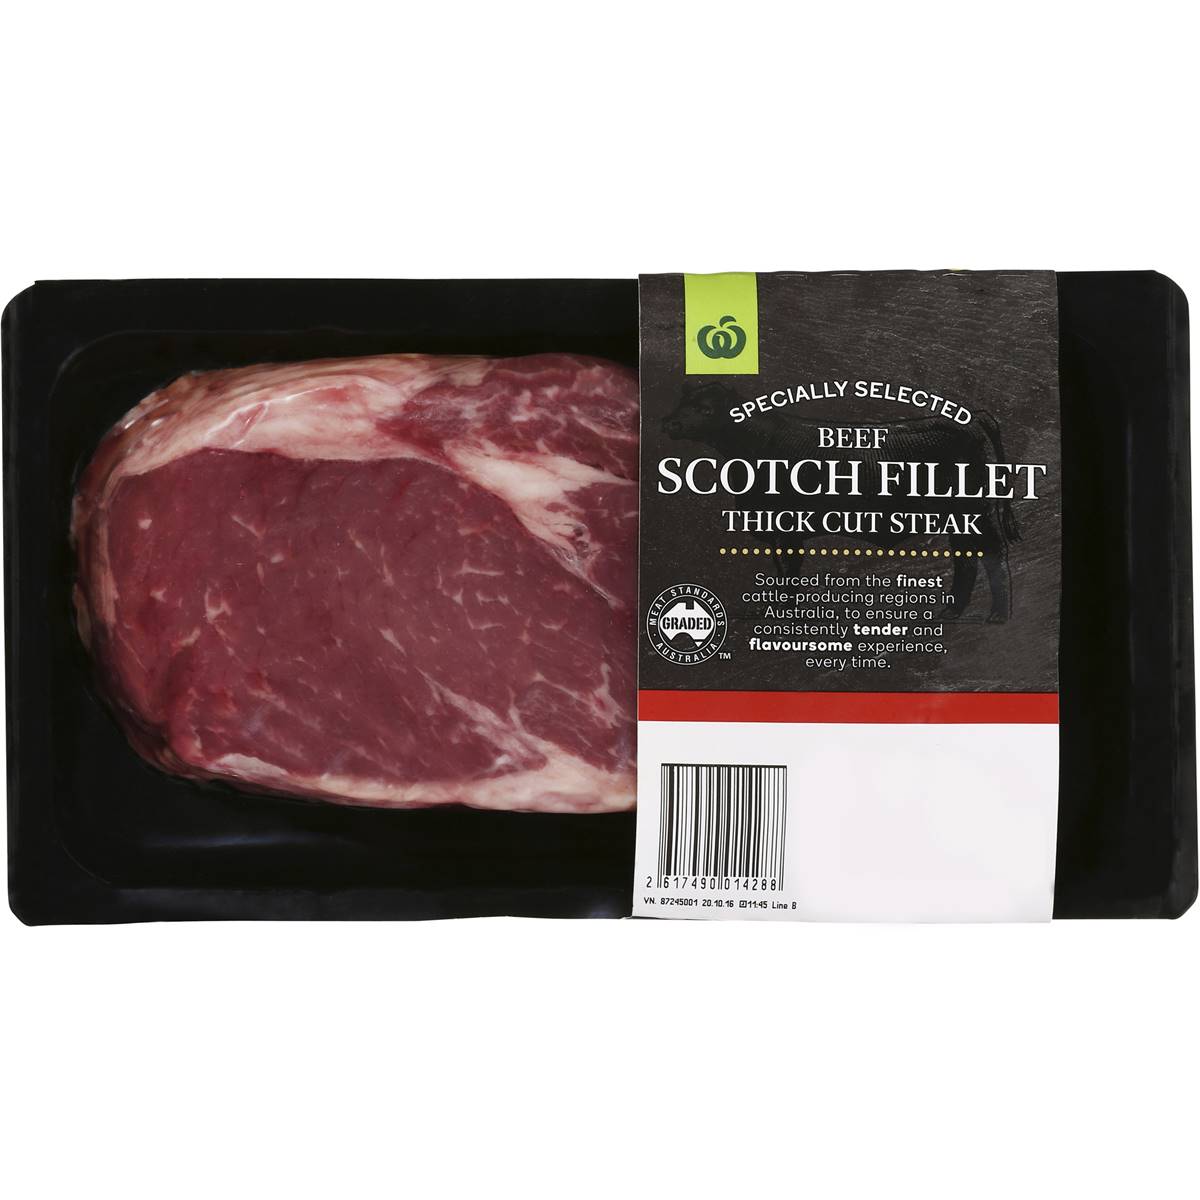 Premium Thick Cut Scotch Fillet Steak 